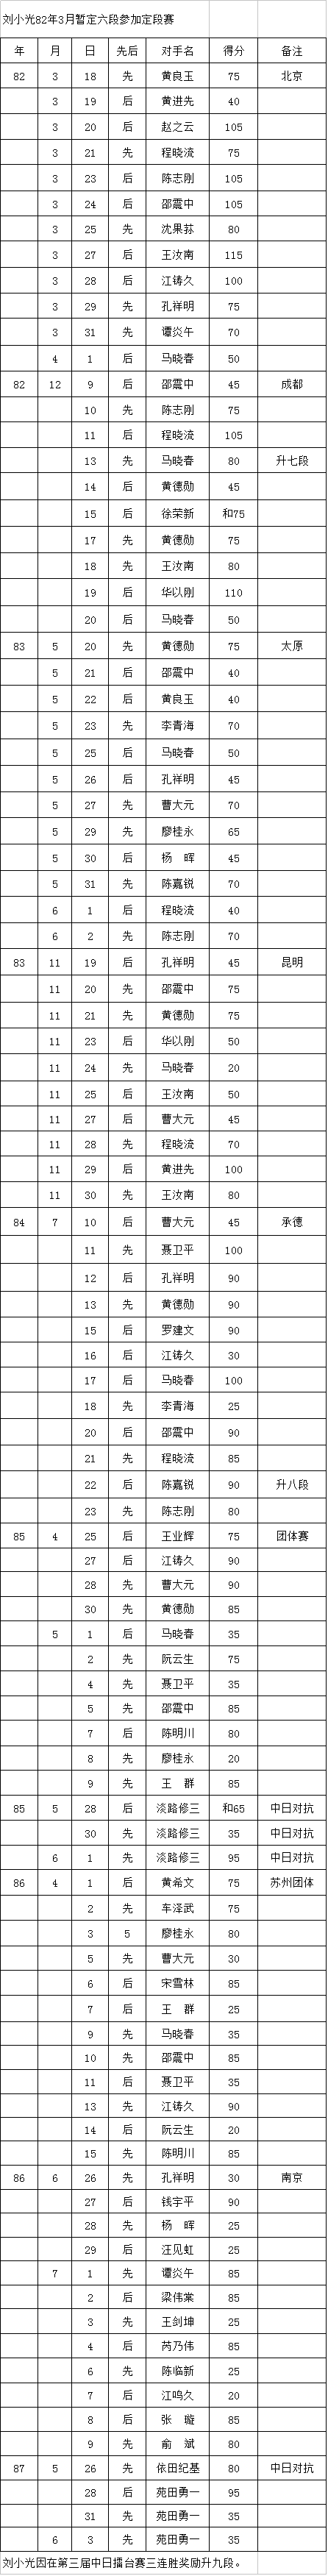 中国围棋职业段位制的历史